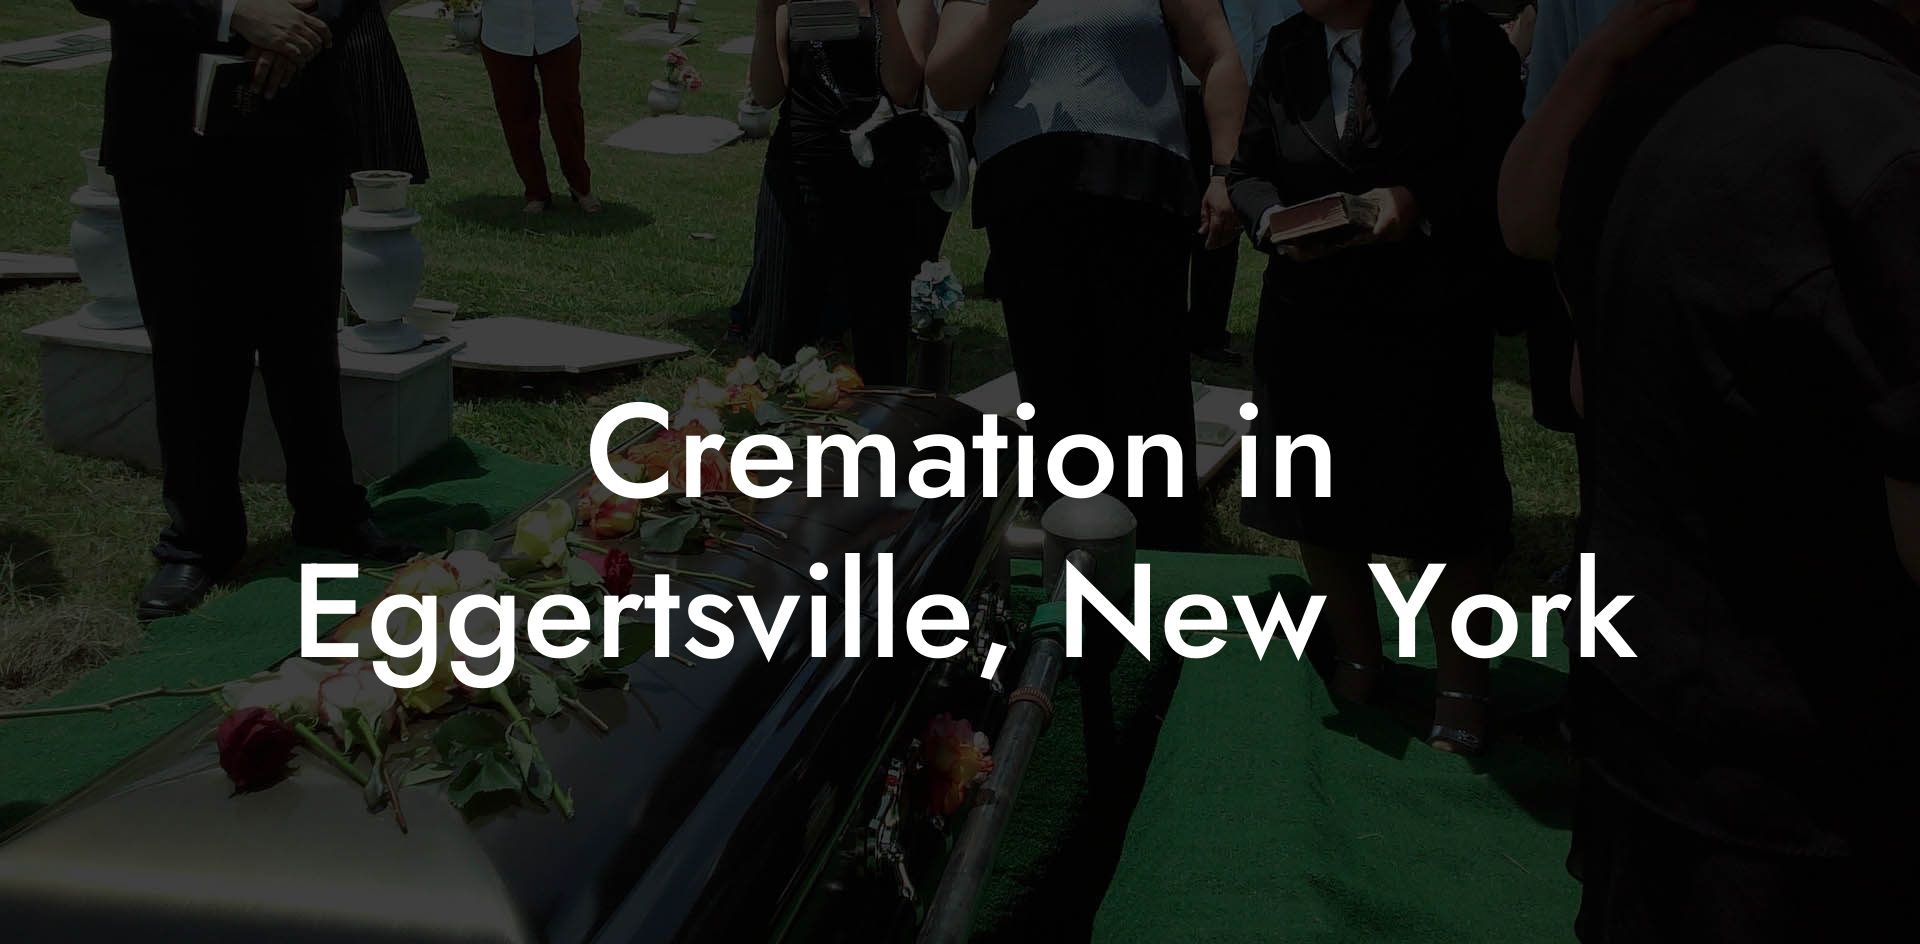 Cremation in Eggertsville, New York